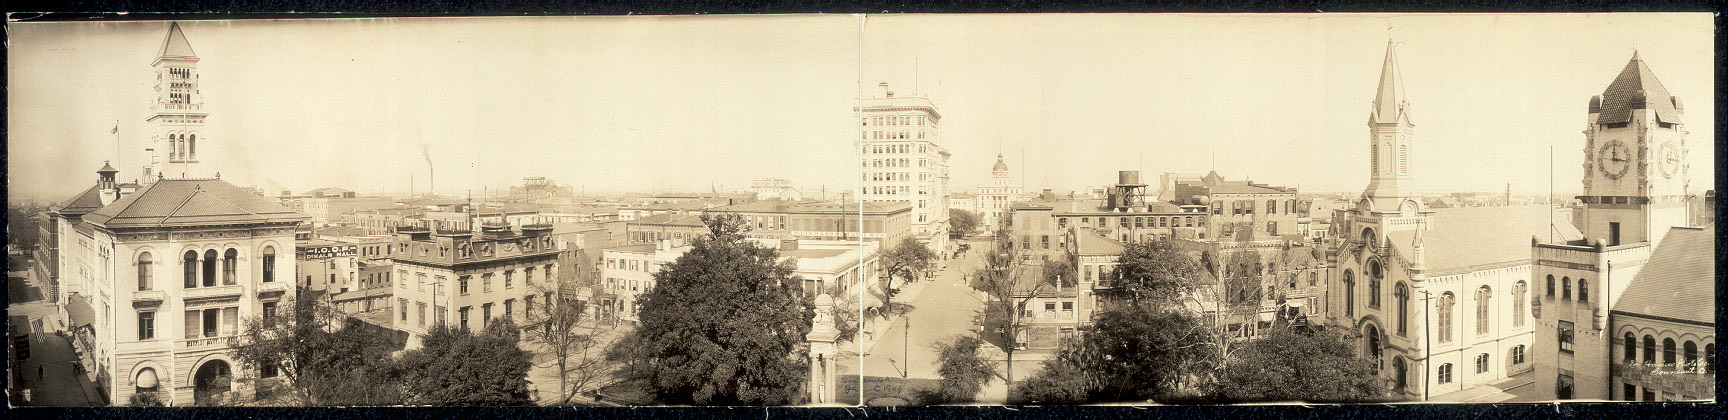 Wright Square, Savannah, Georgia, 1909